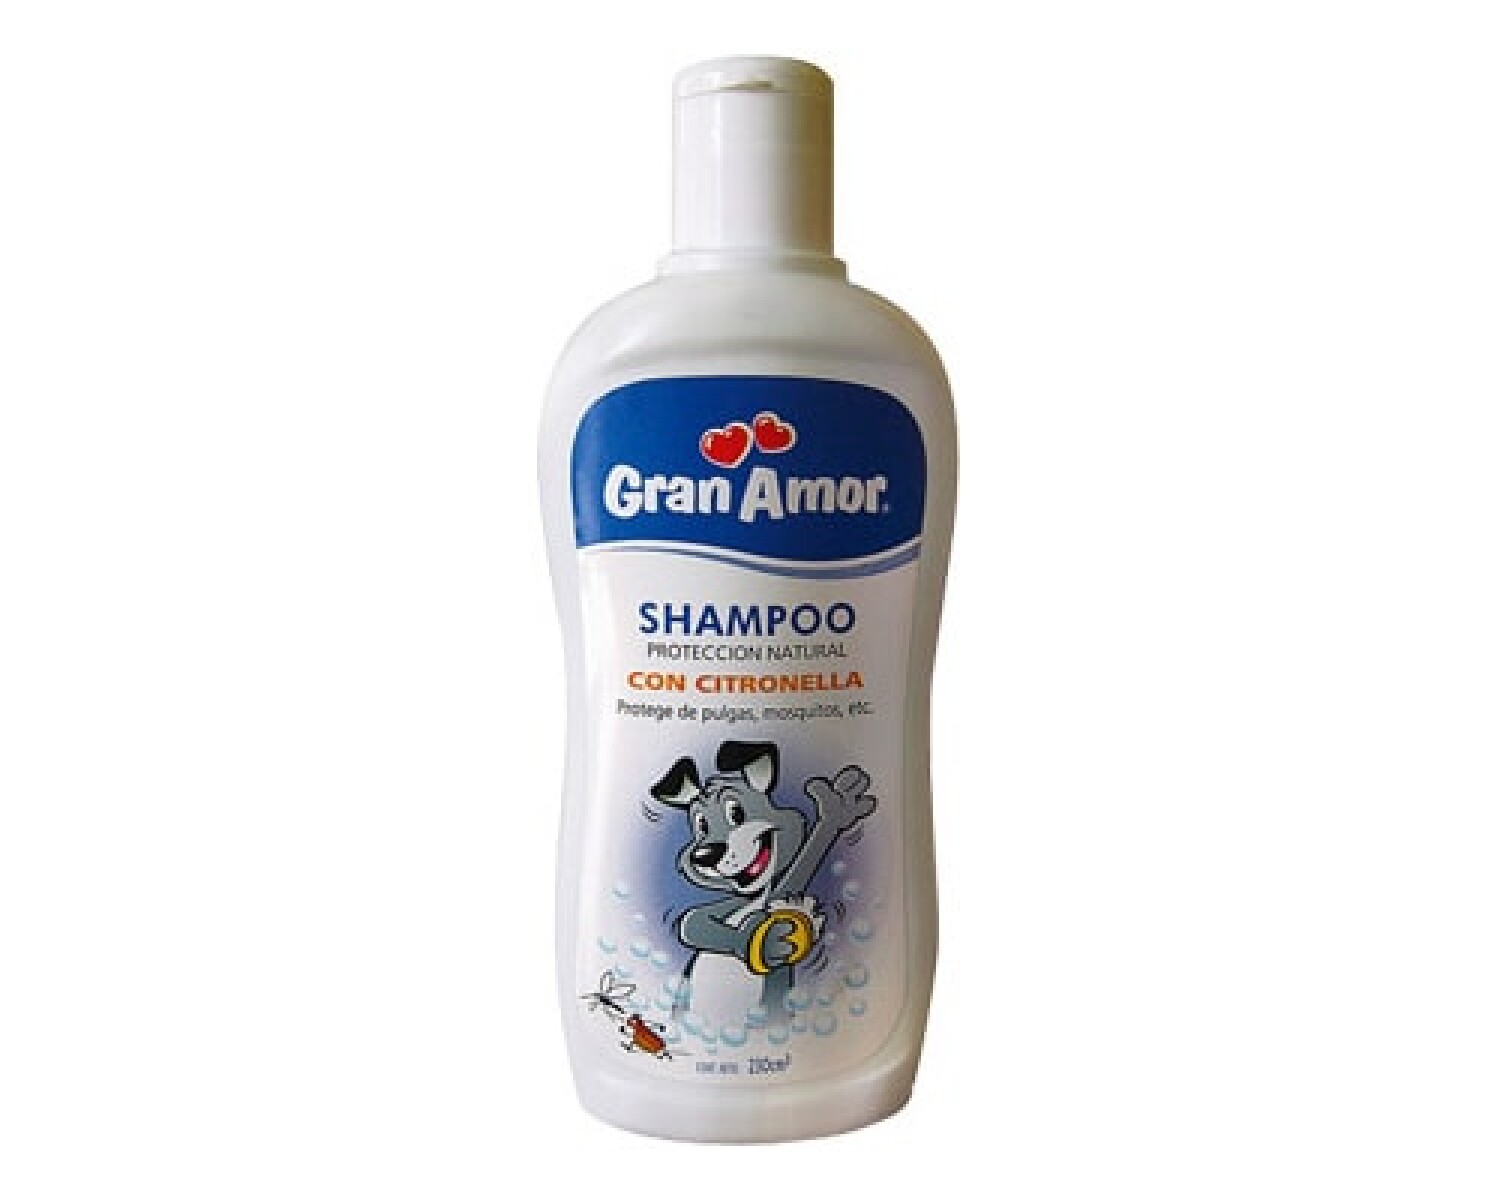 GRAN AMOR Shampoo con Citronella - 230 cc 